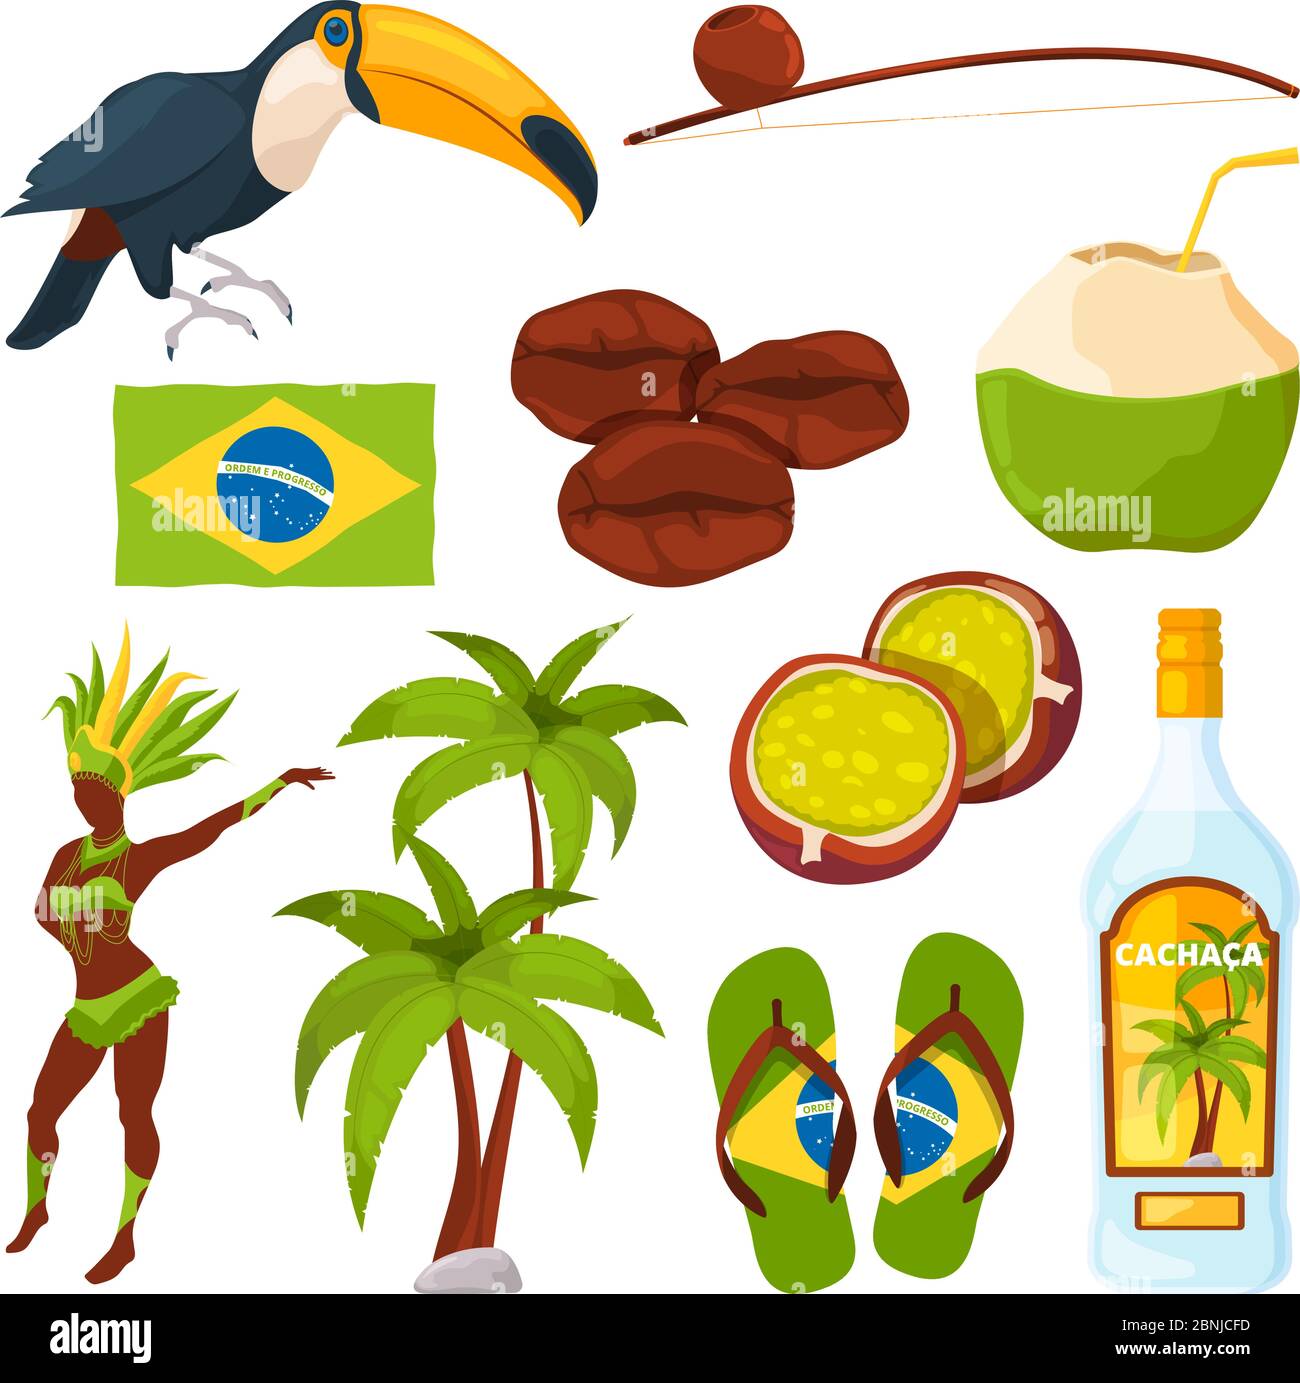 Vektor-Sammlung von verschiedenen brasilianischen Symbolen Stock Vektor